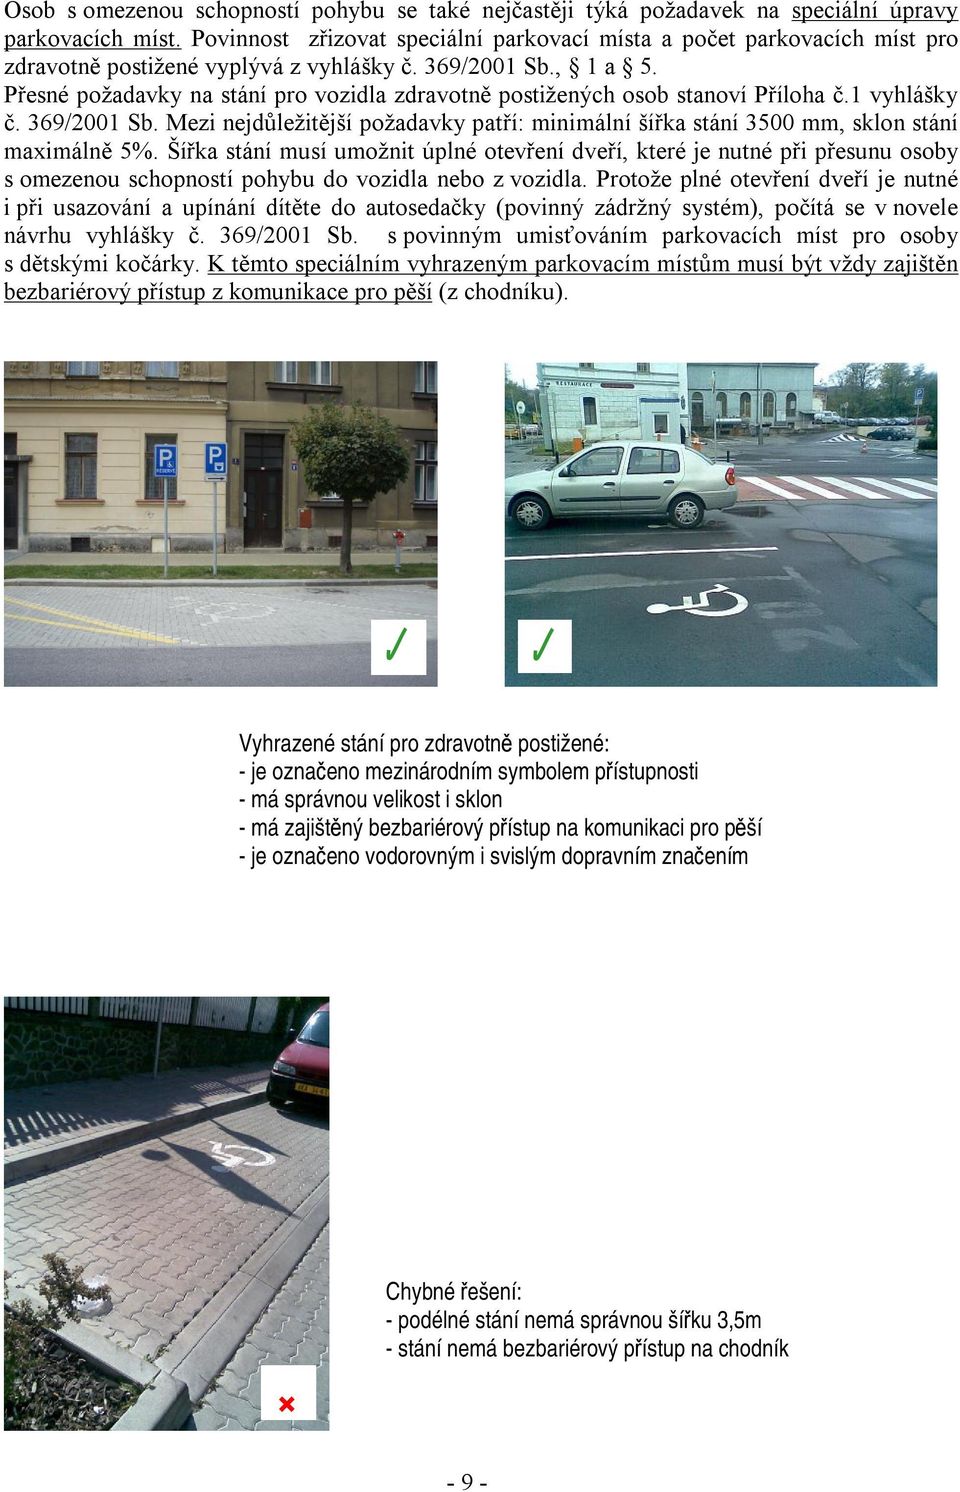 Přesné požadavky na stání pro vozidla zdravotně postižených osob stanoví Příloha č.1 vyhlášky č. 369/2001 Sb.